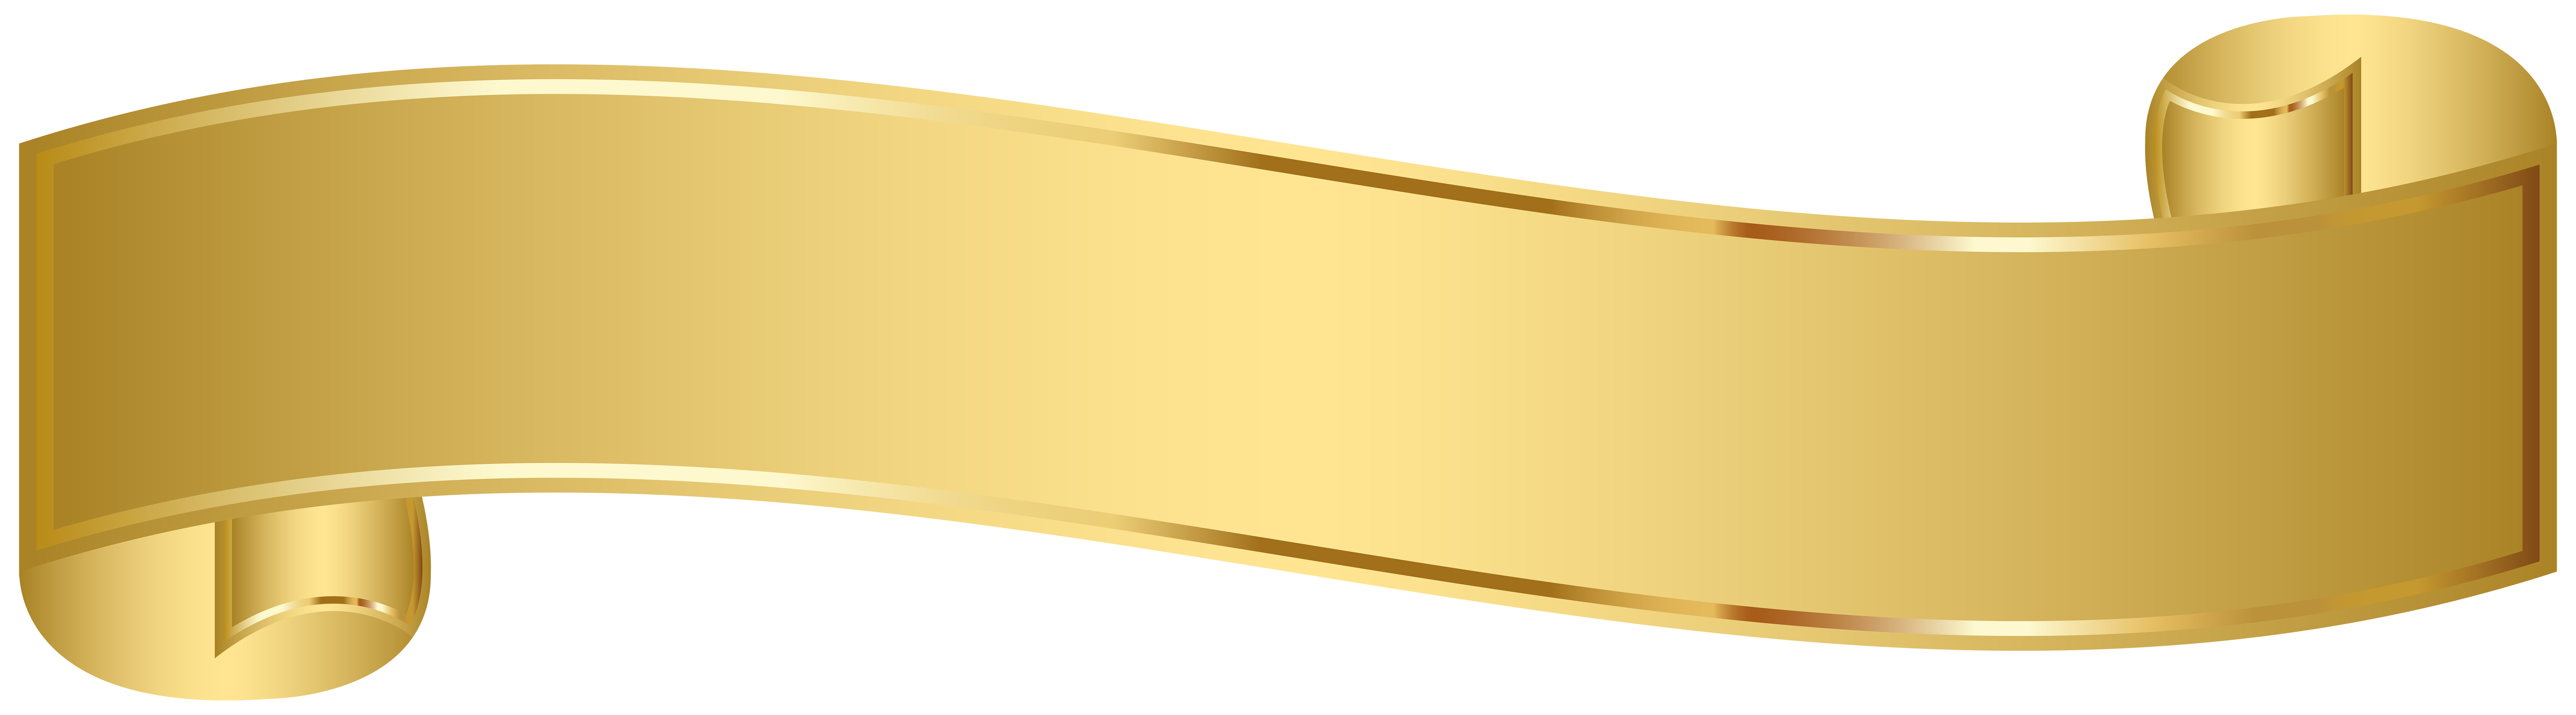 Golden Banner Transparent Image